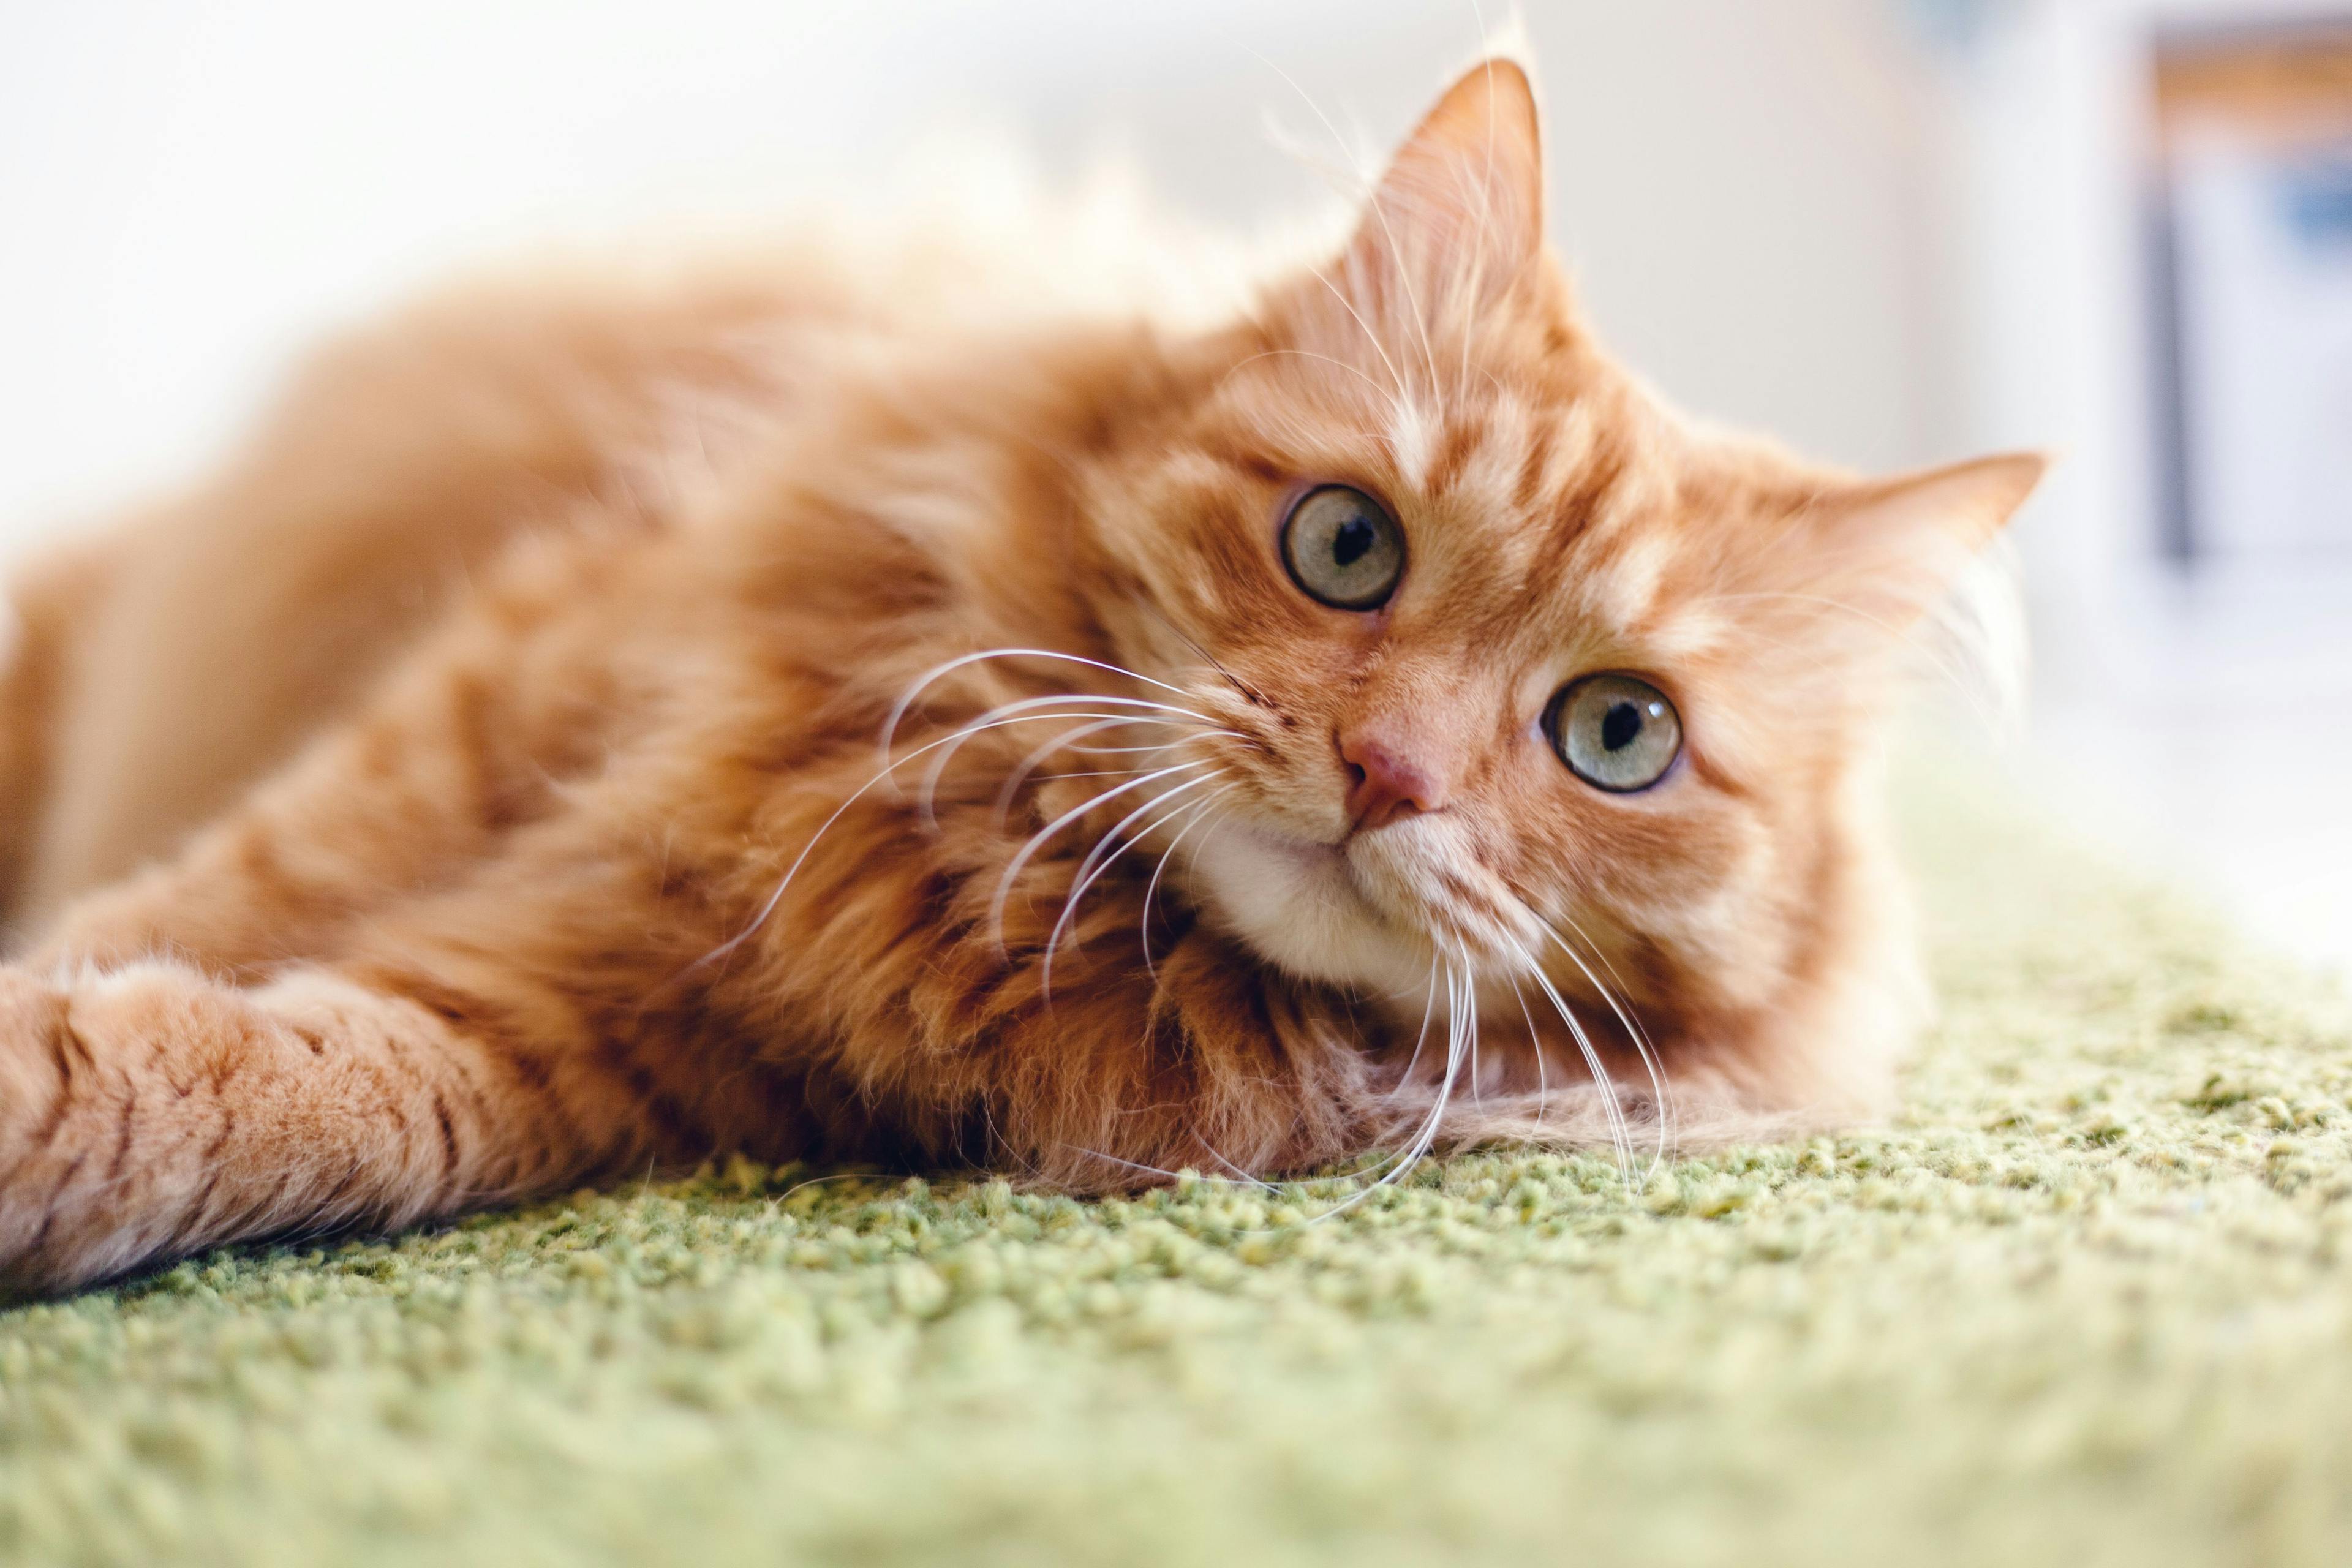 3 Must-reads on feline behavior